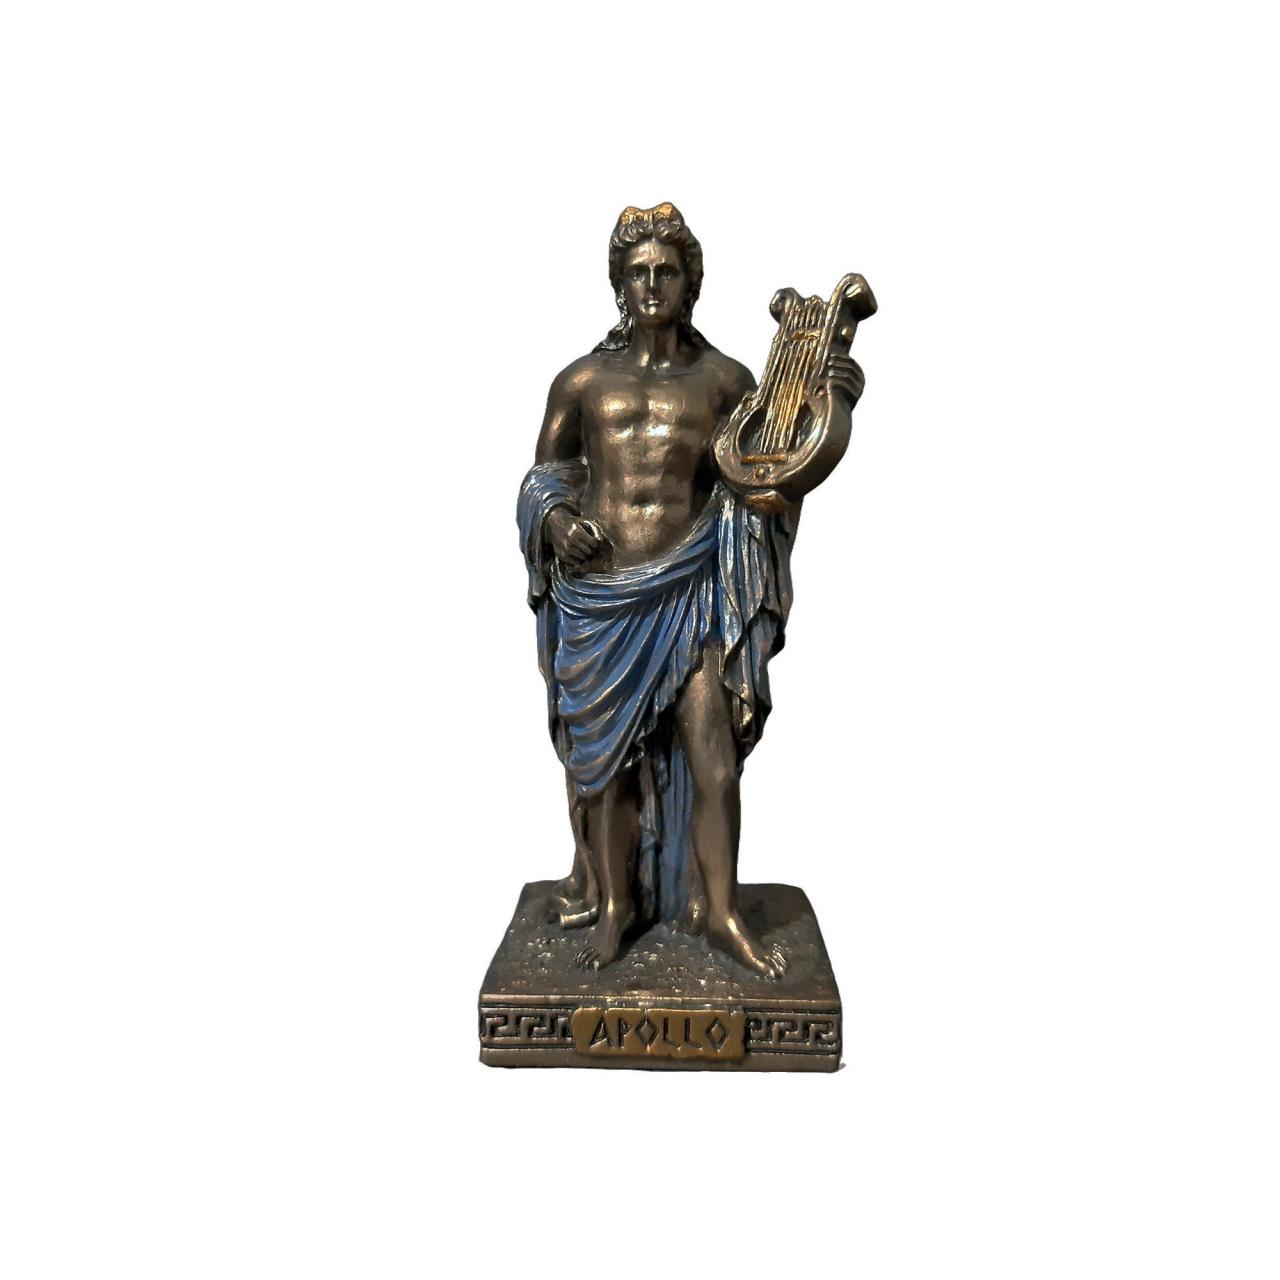 Apollo God Mini Statue Bronze Sculpture 9cm - 3.54"